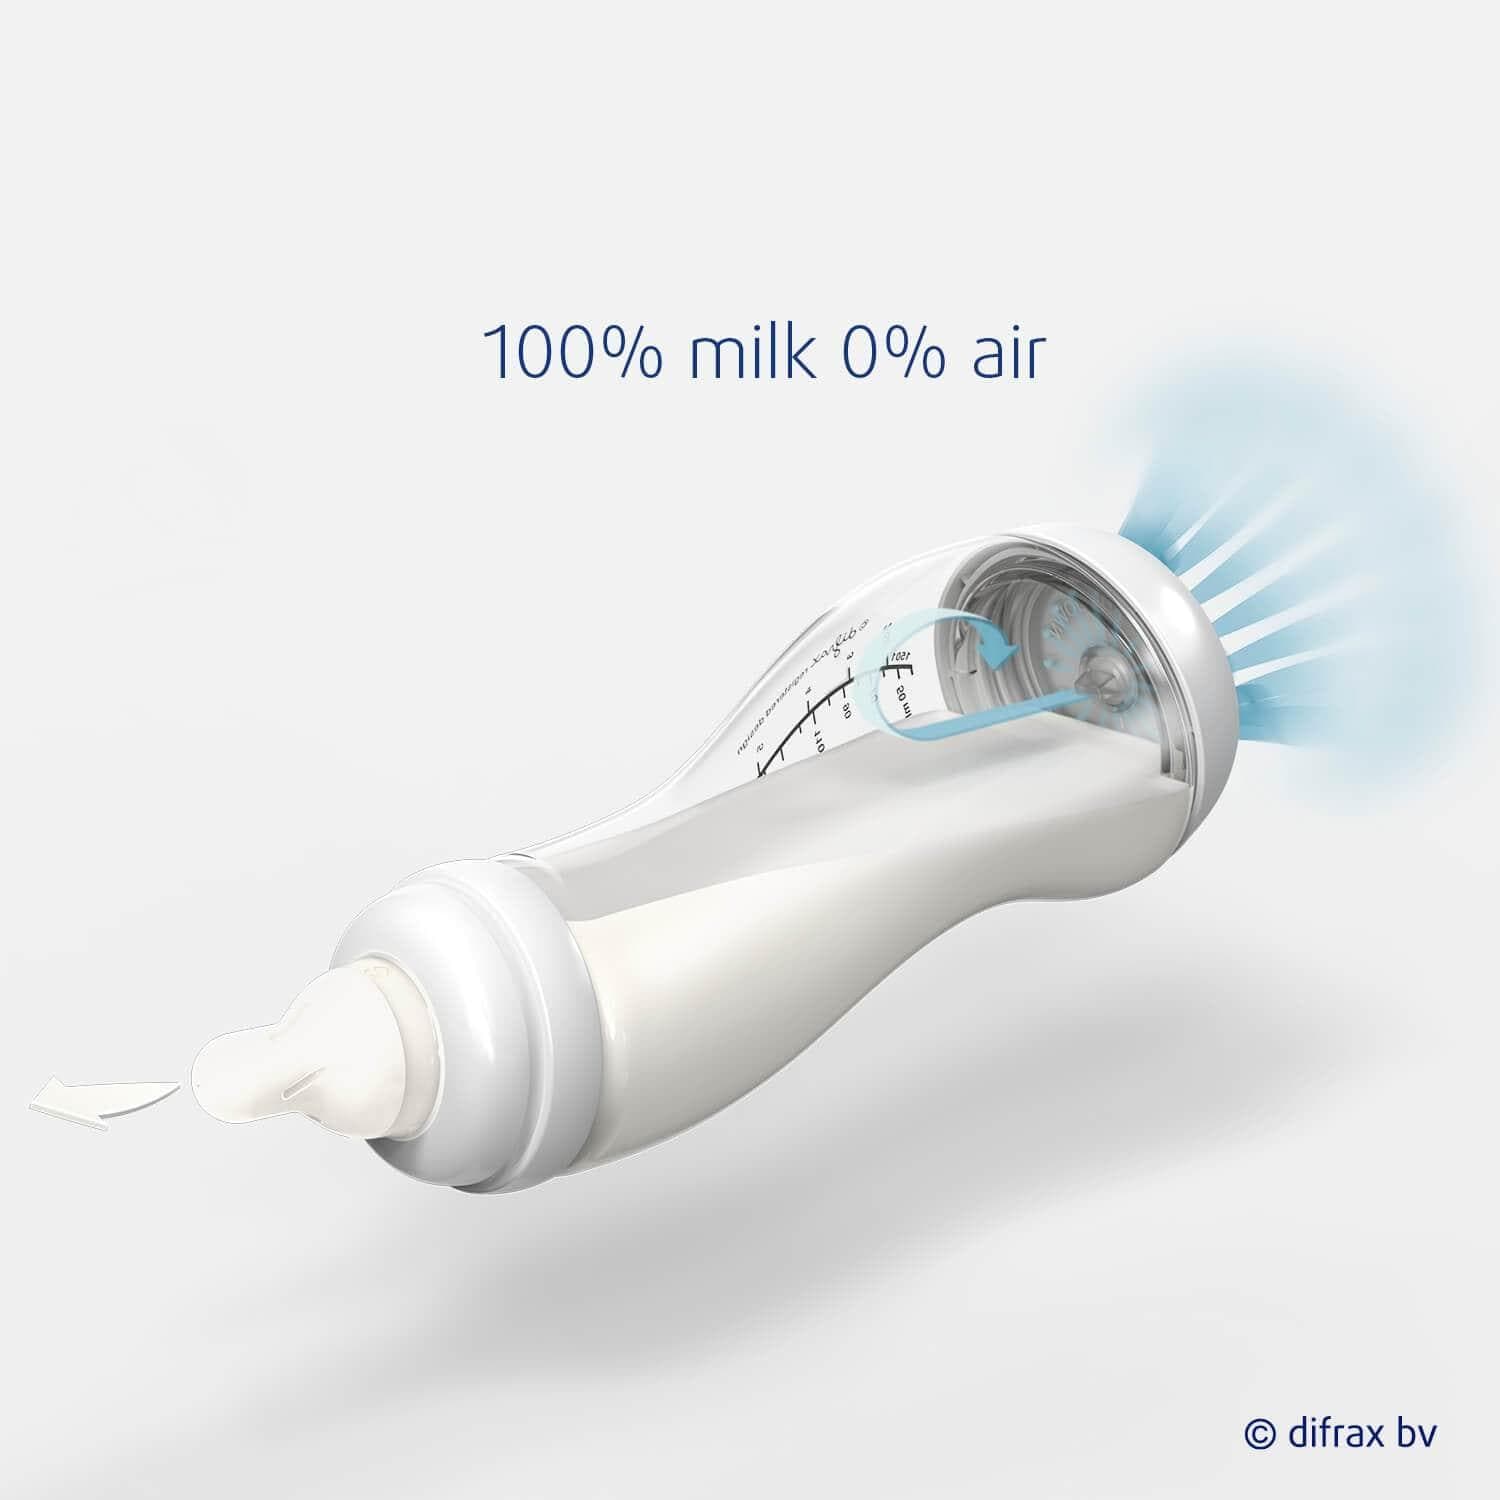 100% milk 0% air